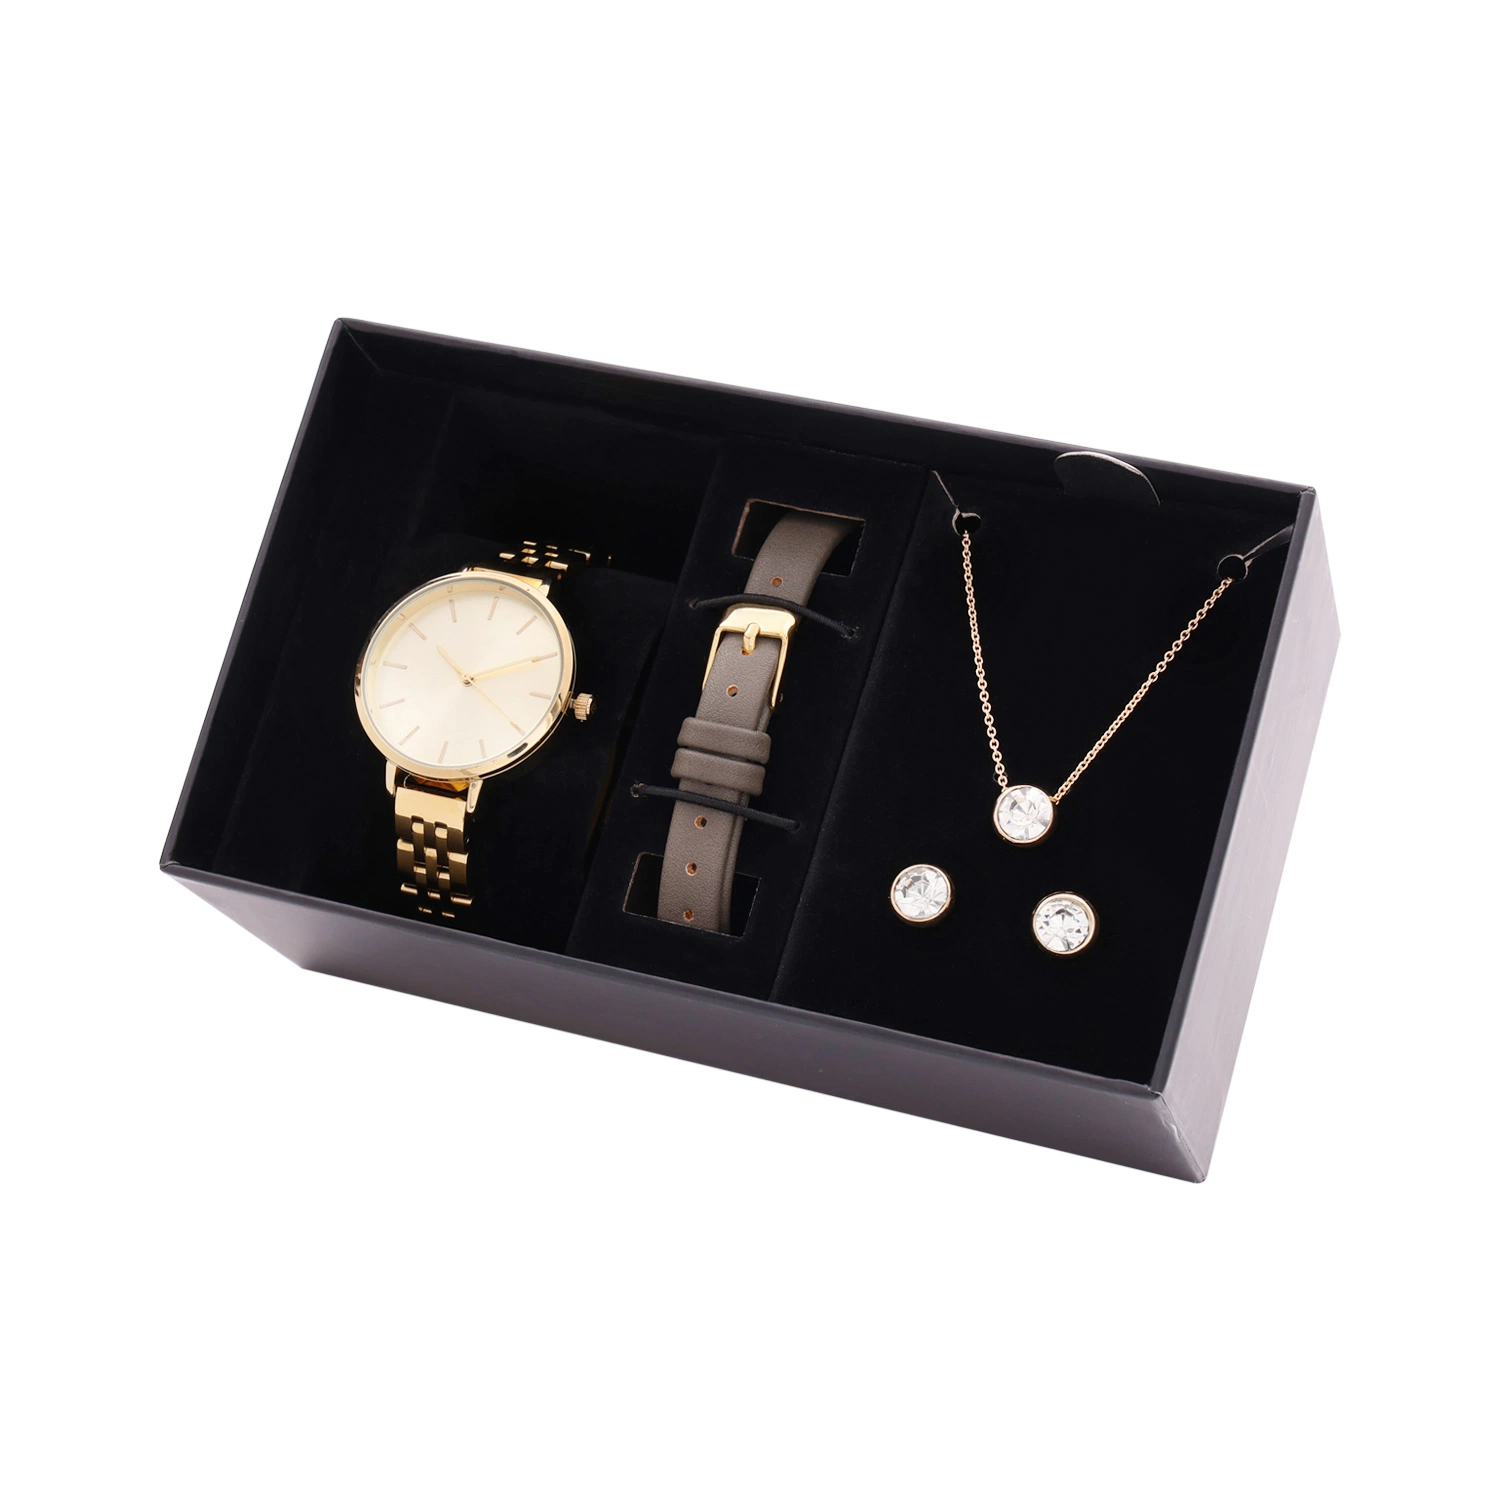 Elegante reloj de dama niñas Joyería, Joyas de acero de alta calidad ver conjuntos de regalo reloj de lujo joyas, reloj de pulsera de Moda juegos de joyería